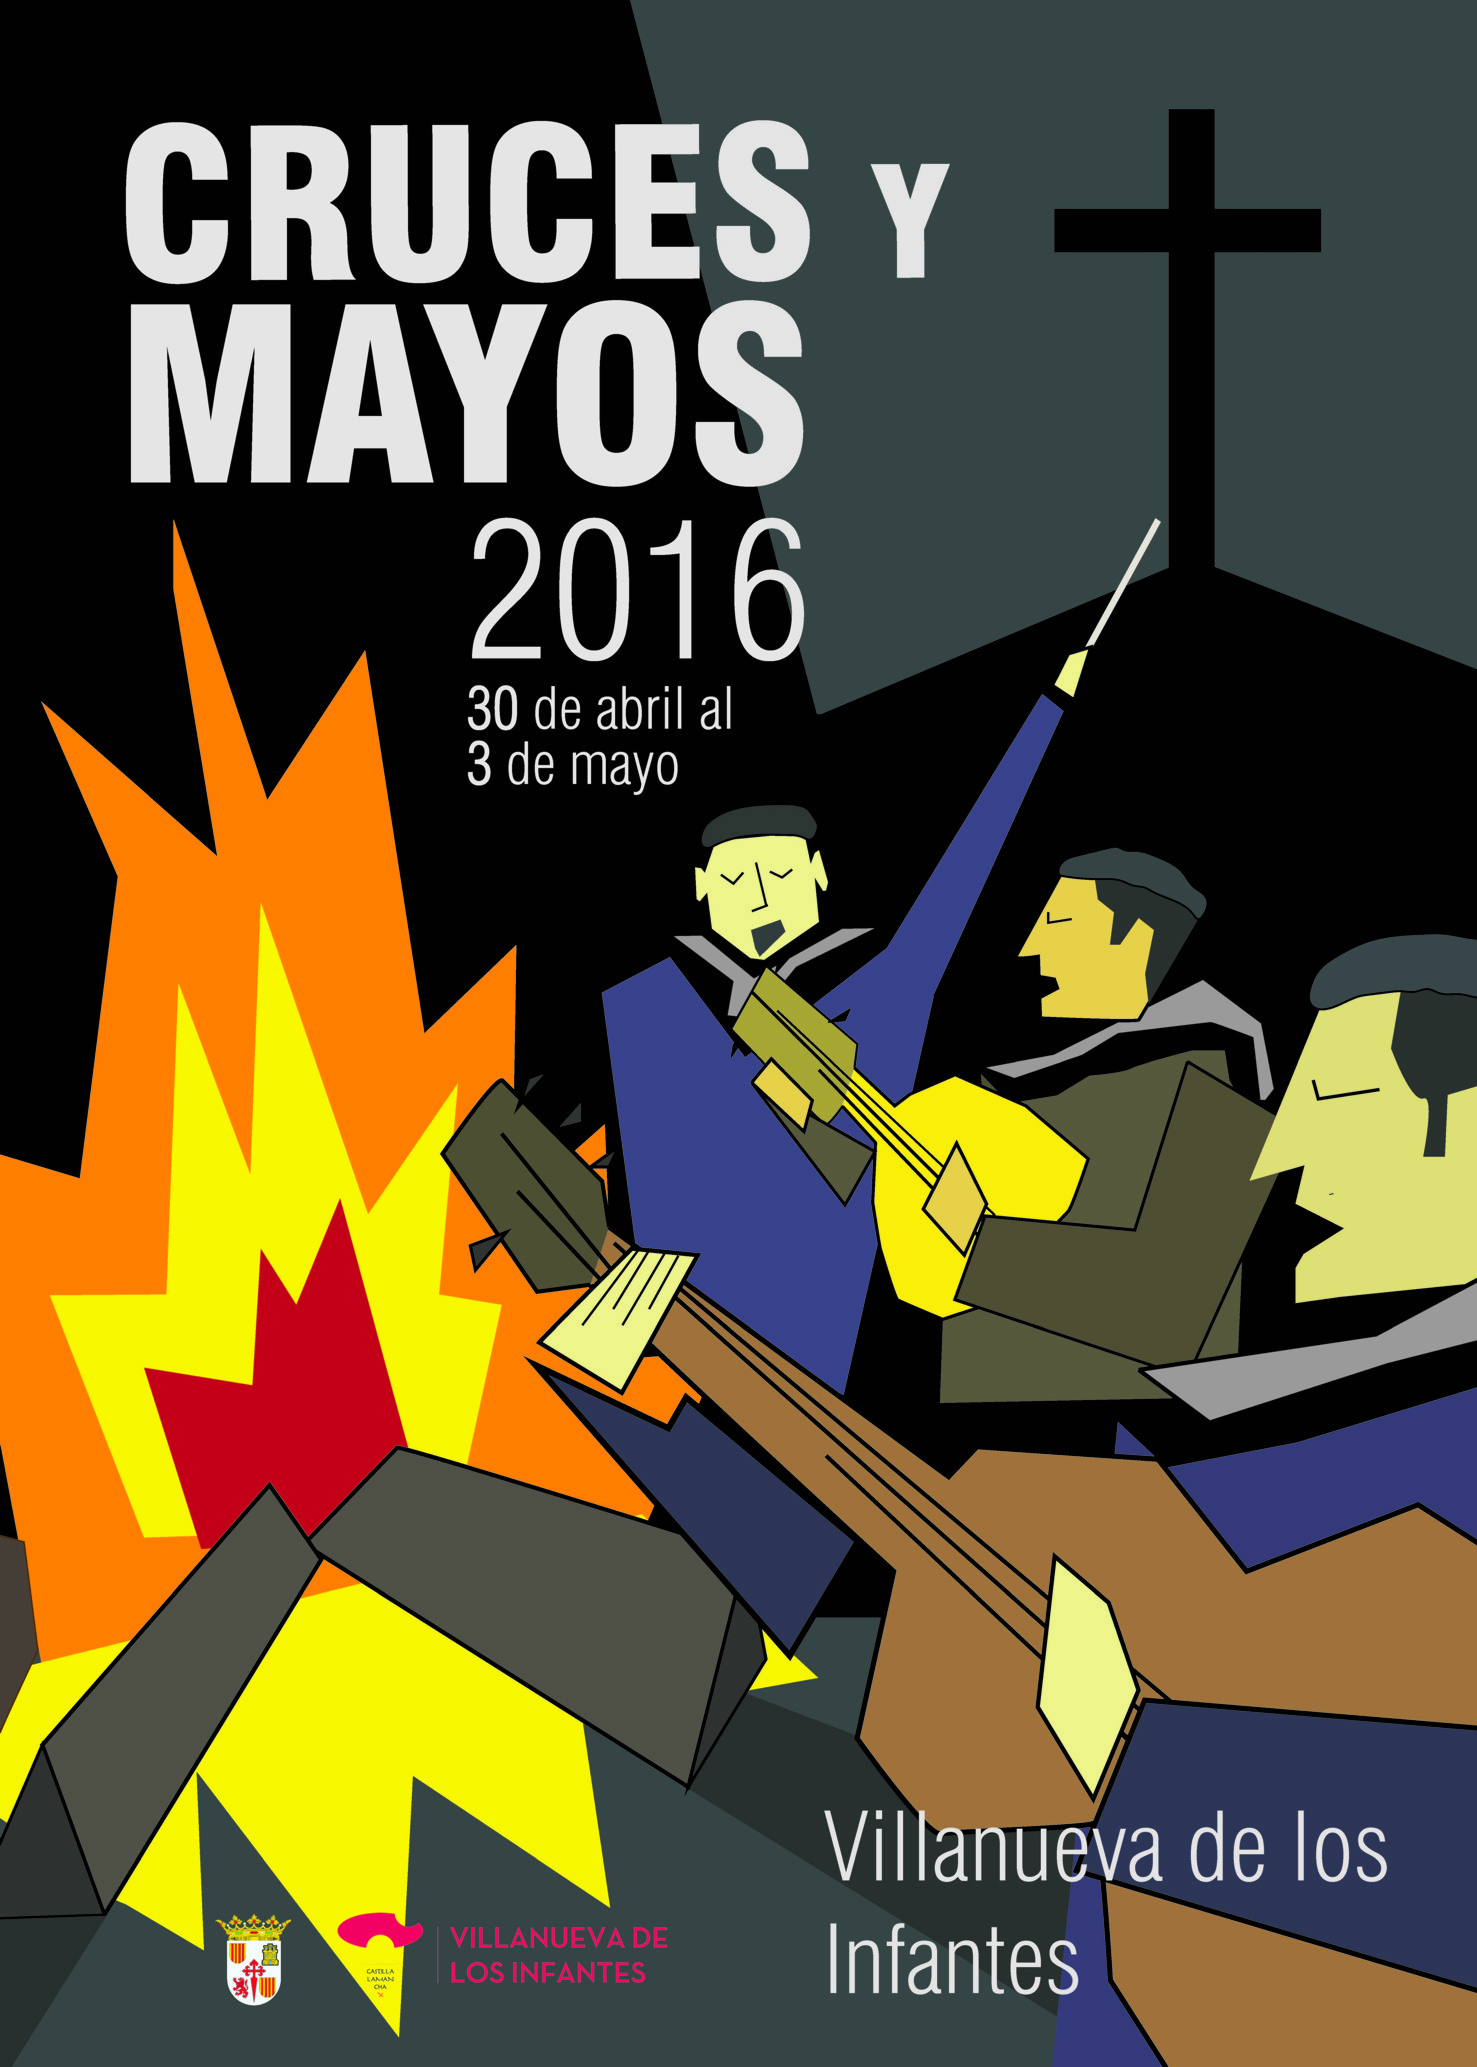 Cruces de Mayo 2016 en Villanueva de los Infantes, cartel ganador realizado por Manuel Mayorga Moron  